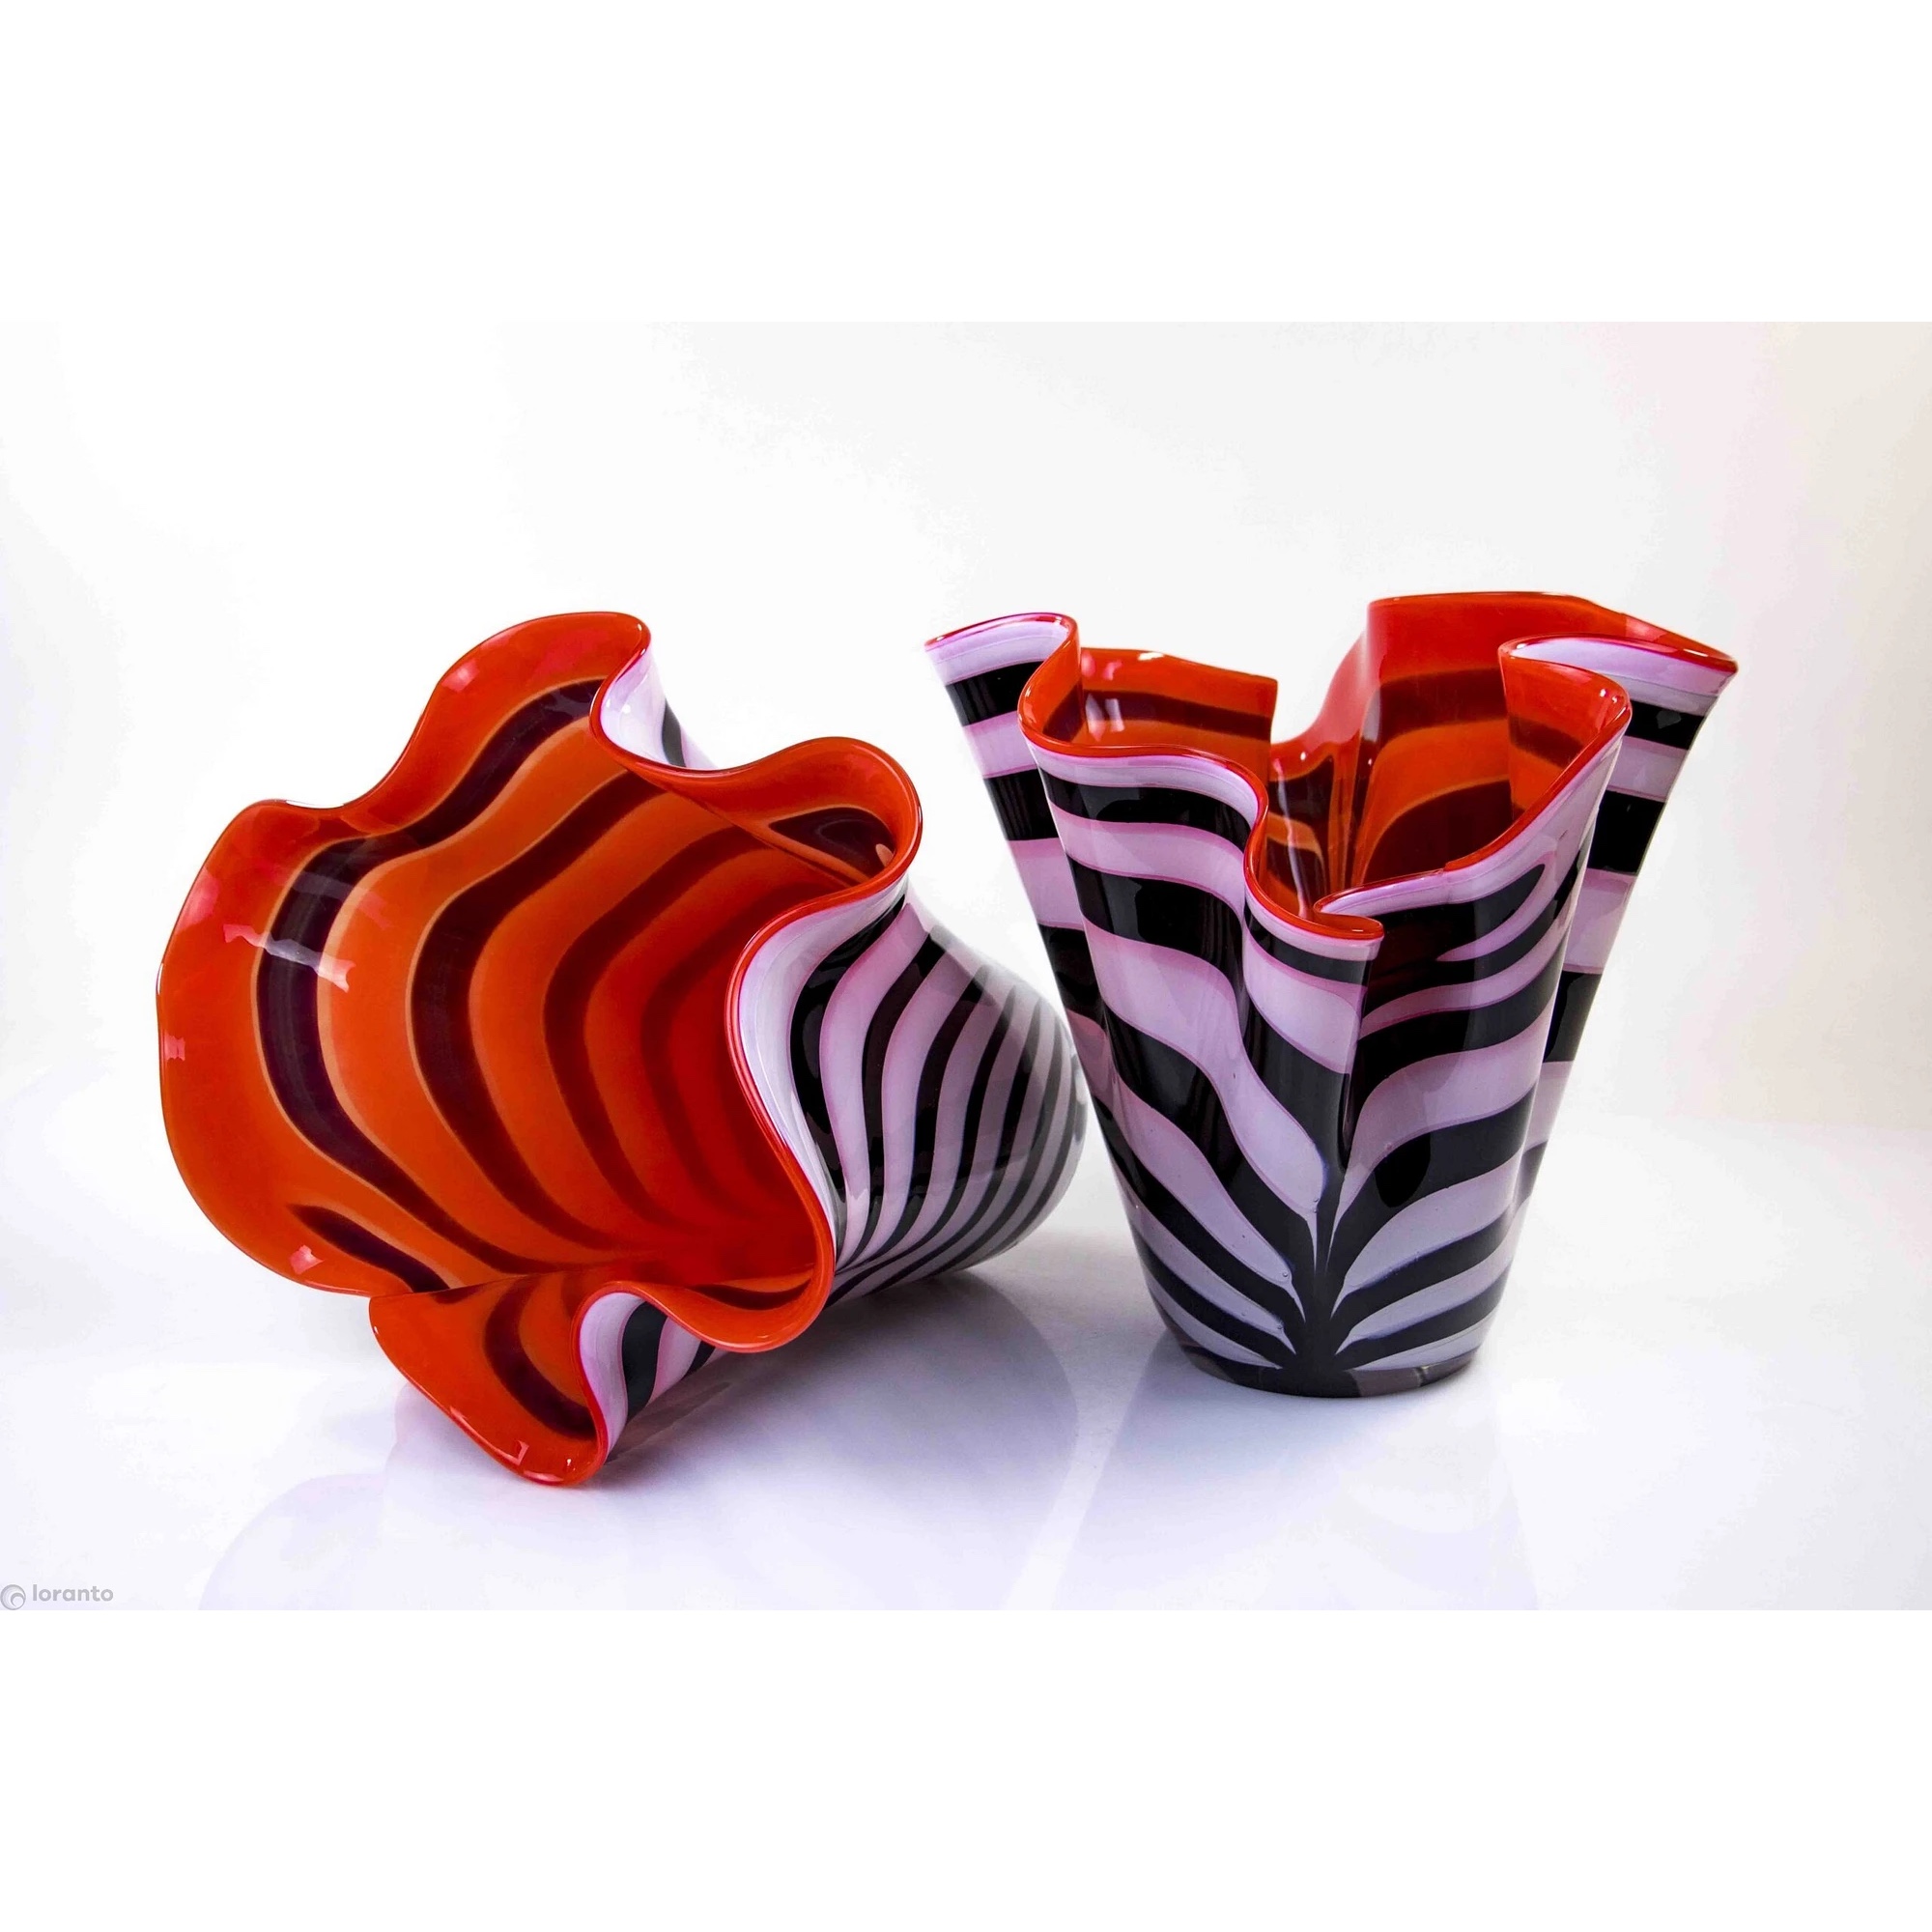 Loranto glas Vaas ' Rood met zebra ' 30 cm hoog - Artconsilio